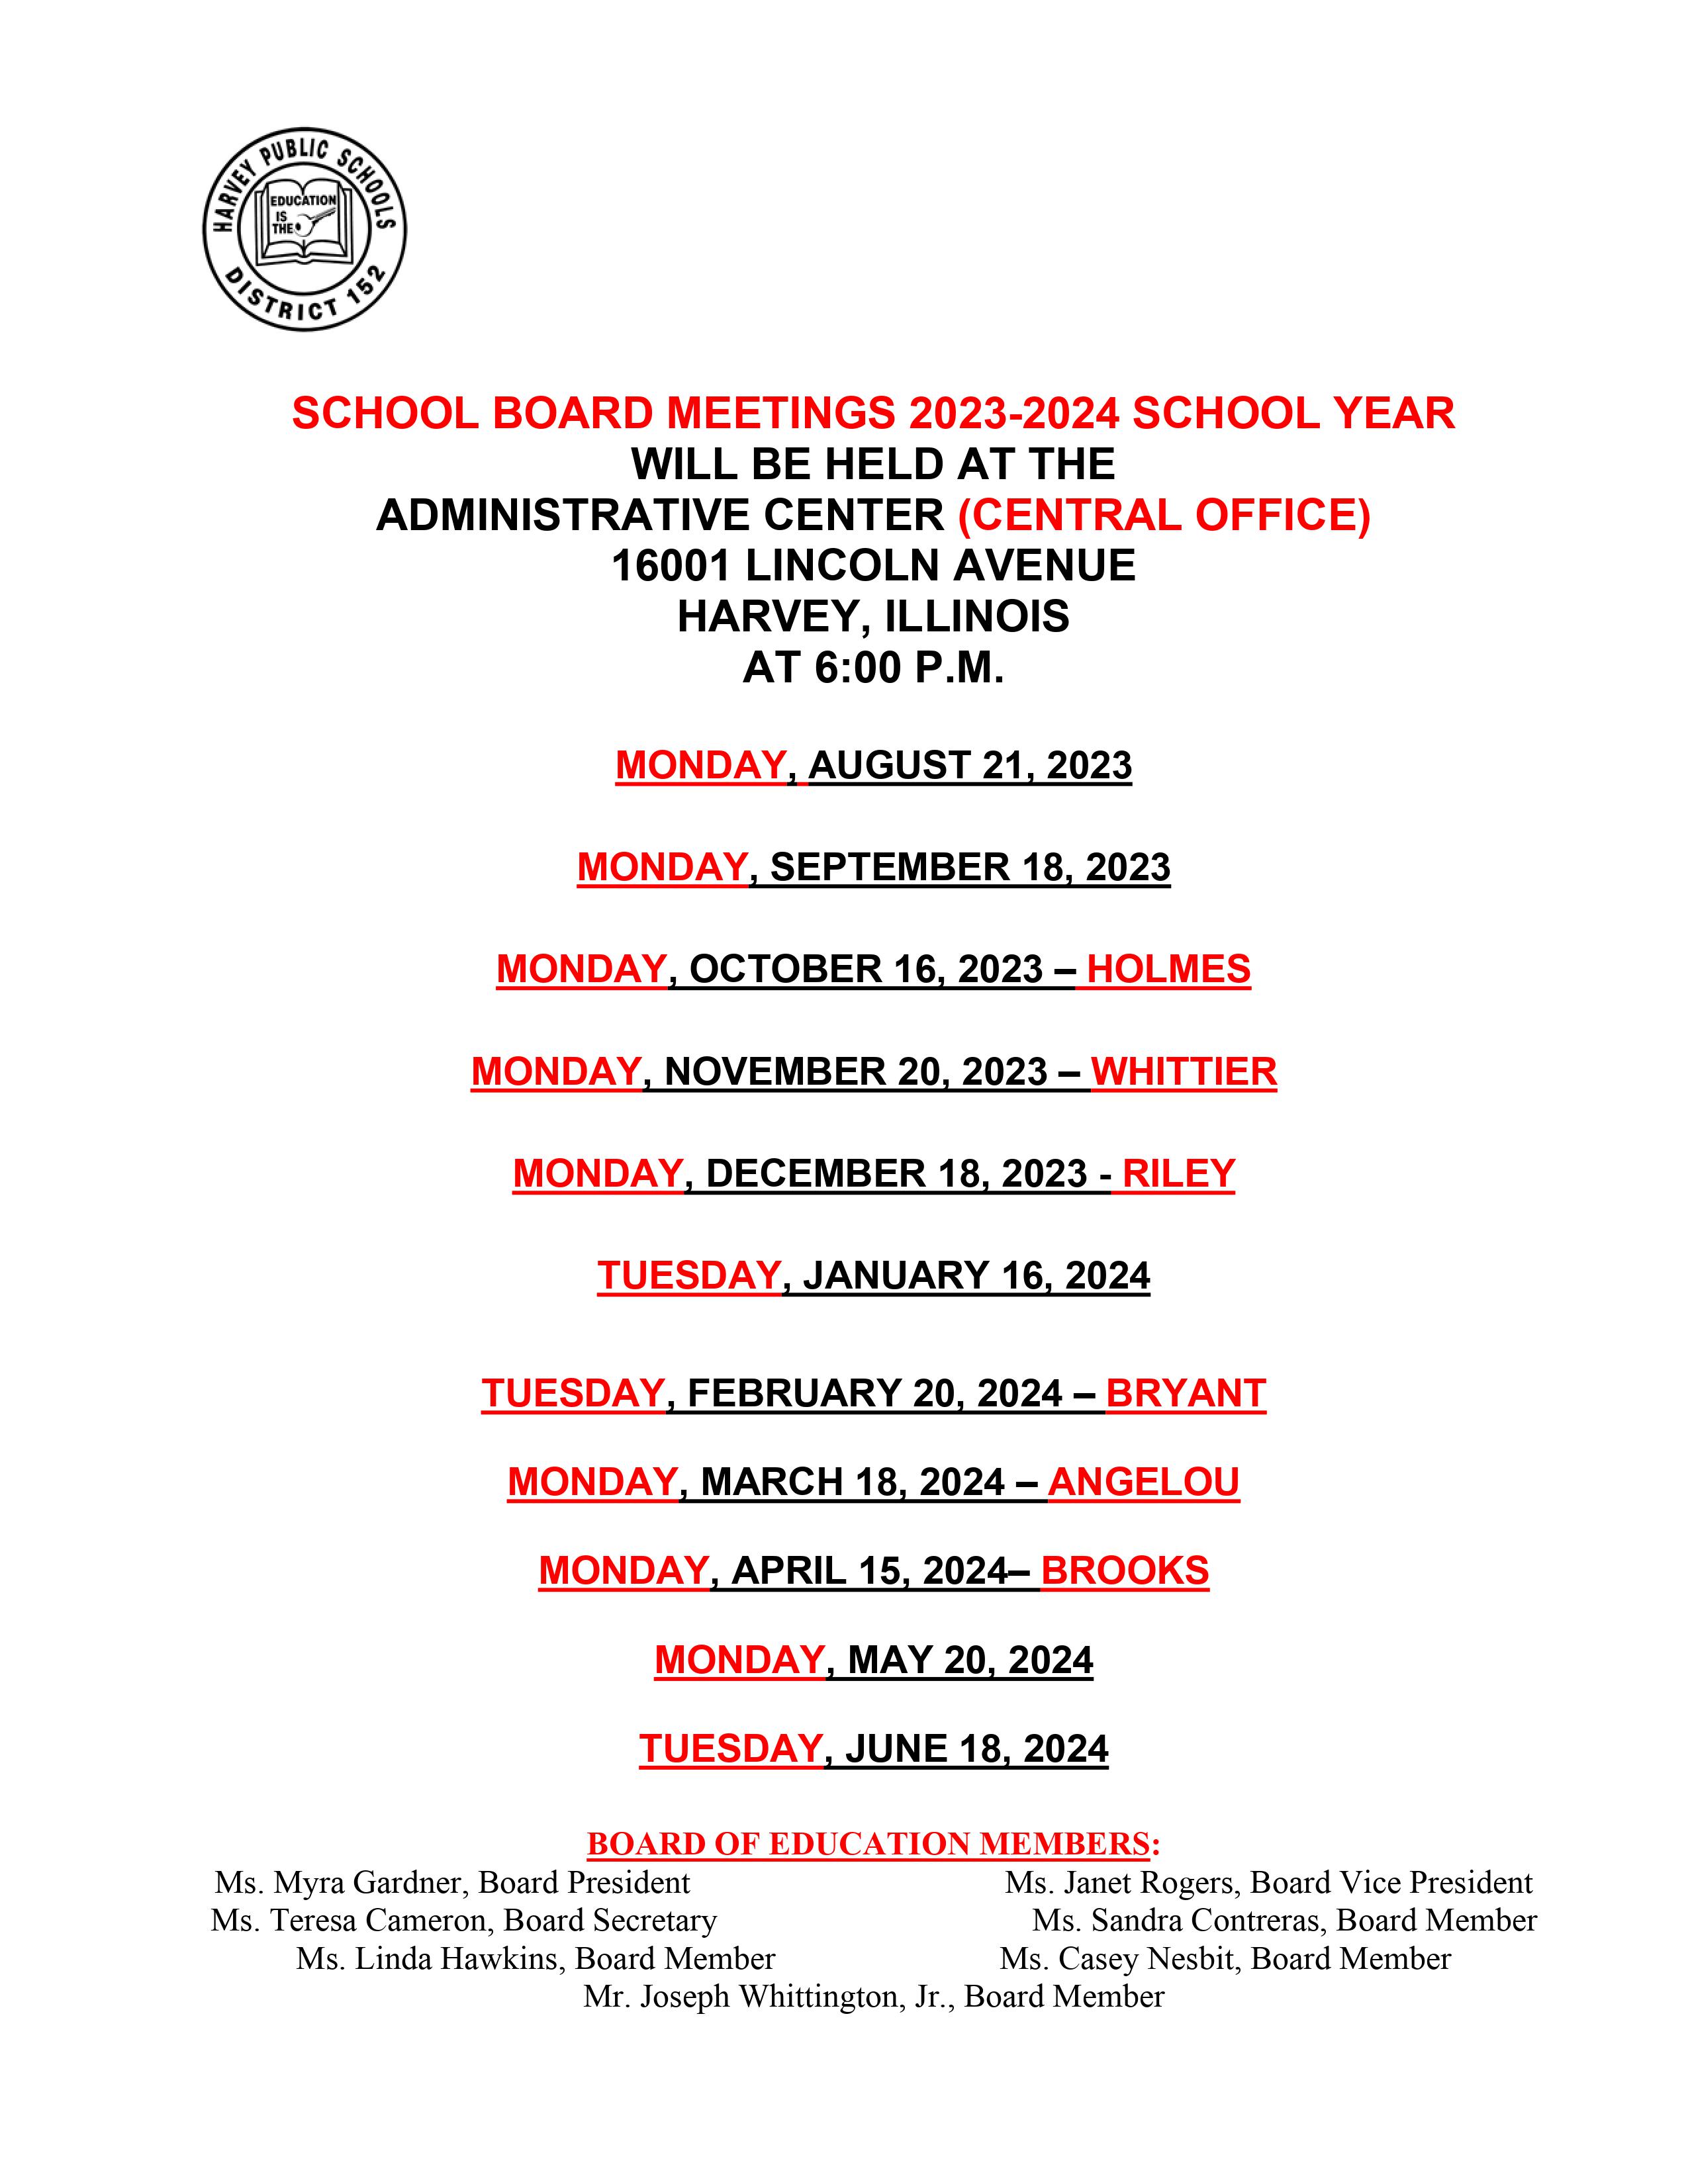 School Board Meetings 2023-2024